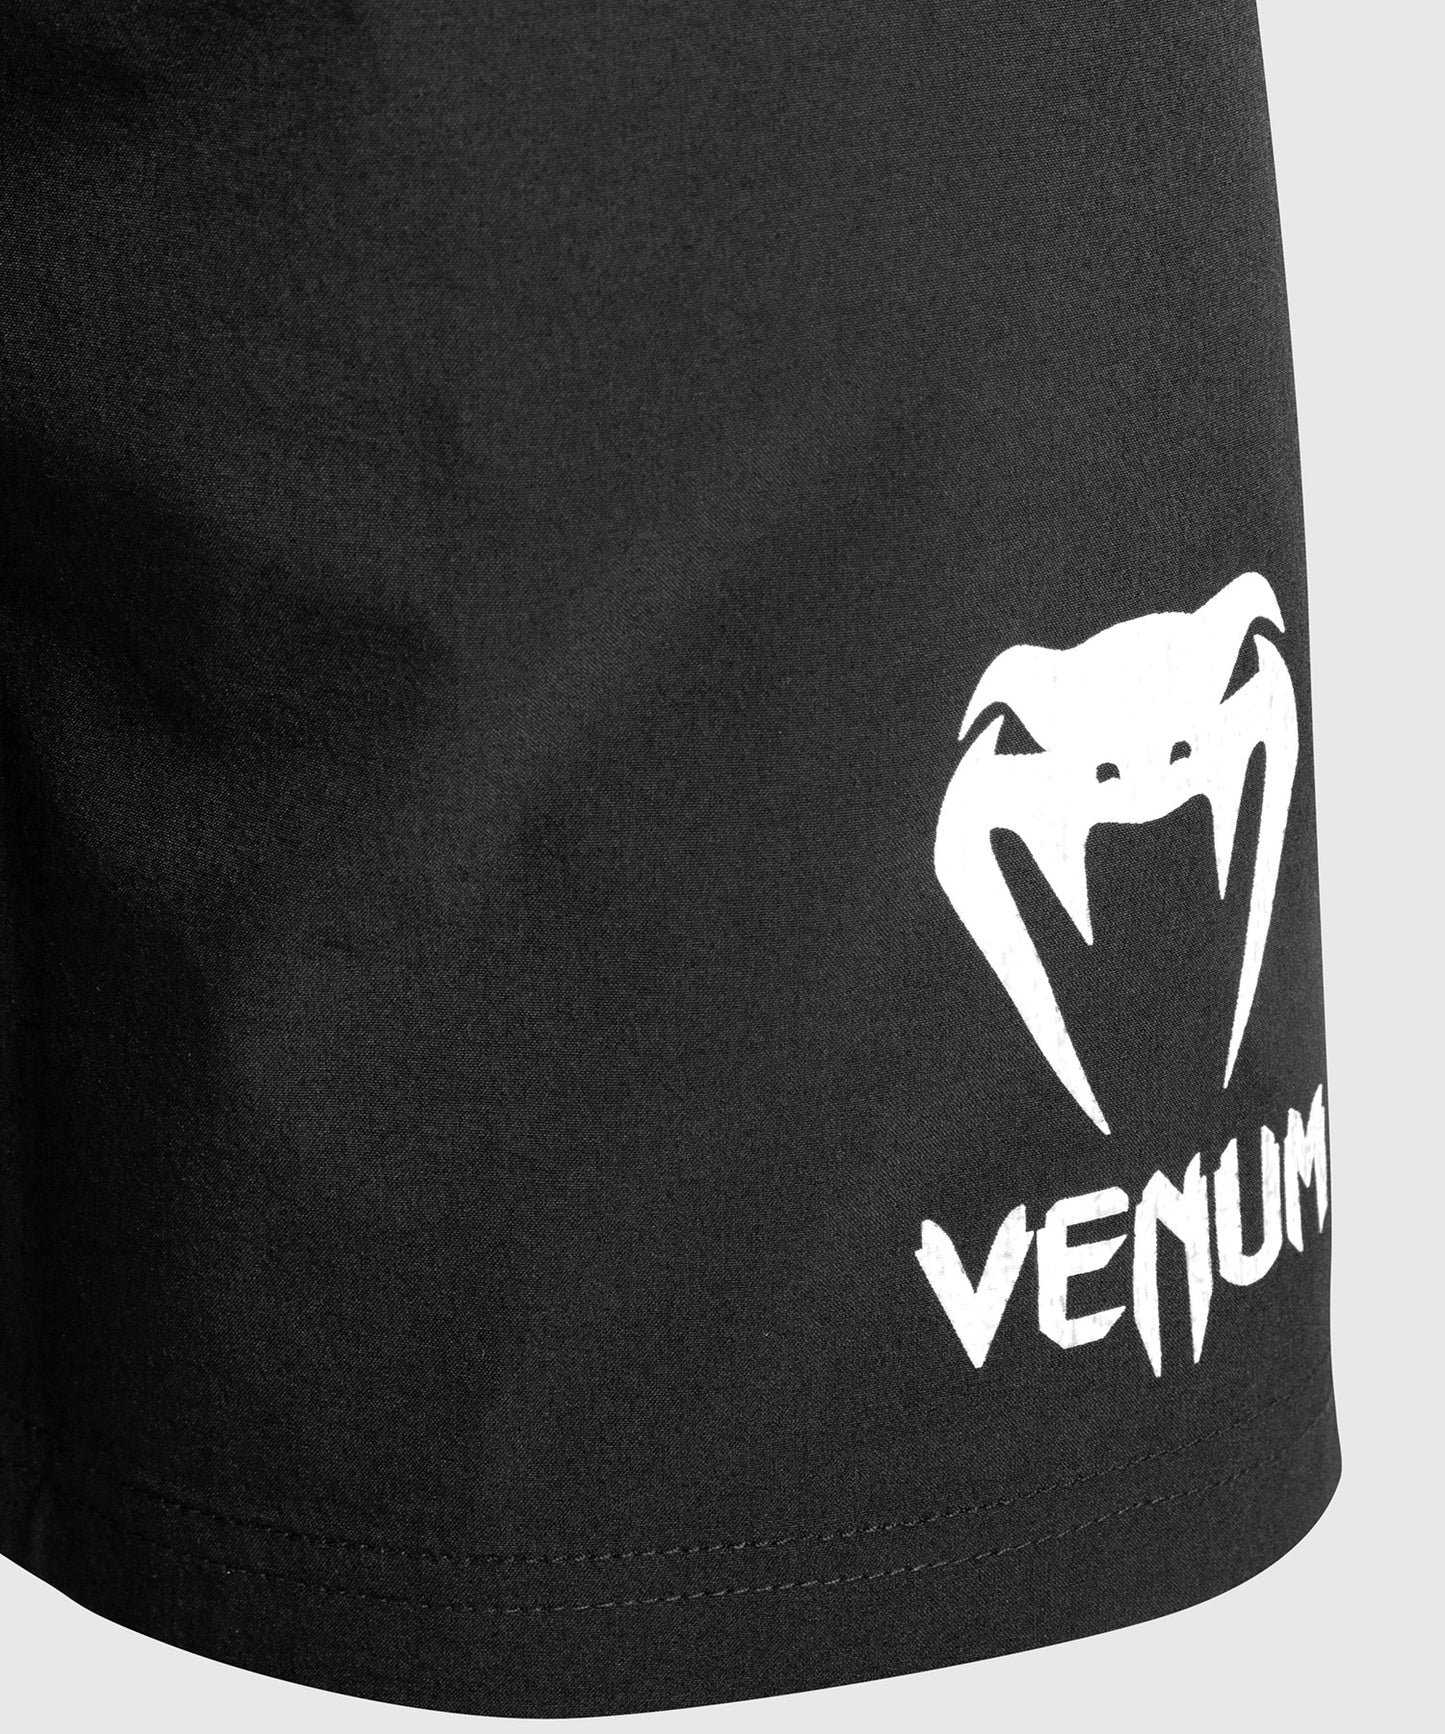 Pantaloncini da Allenamento Classic Venum - Nero/Bianco